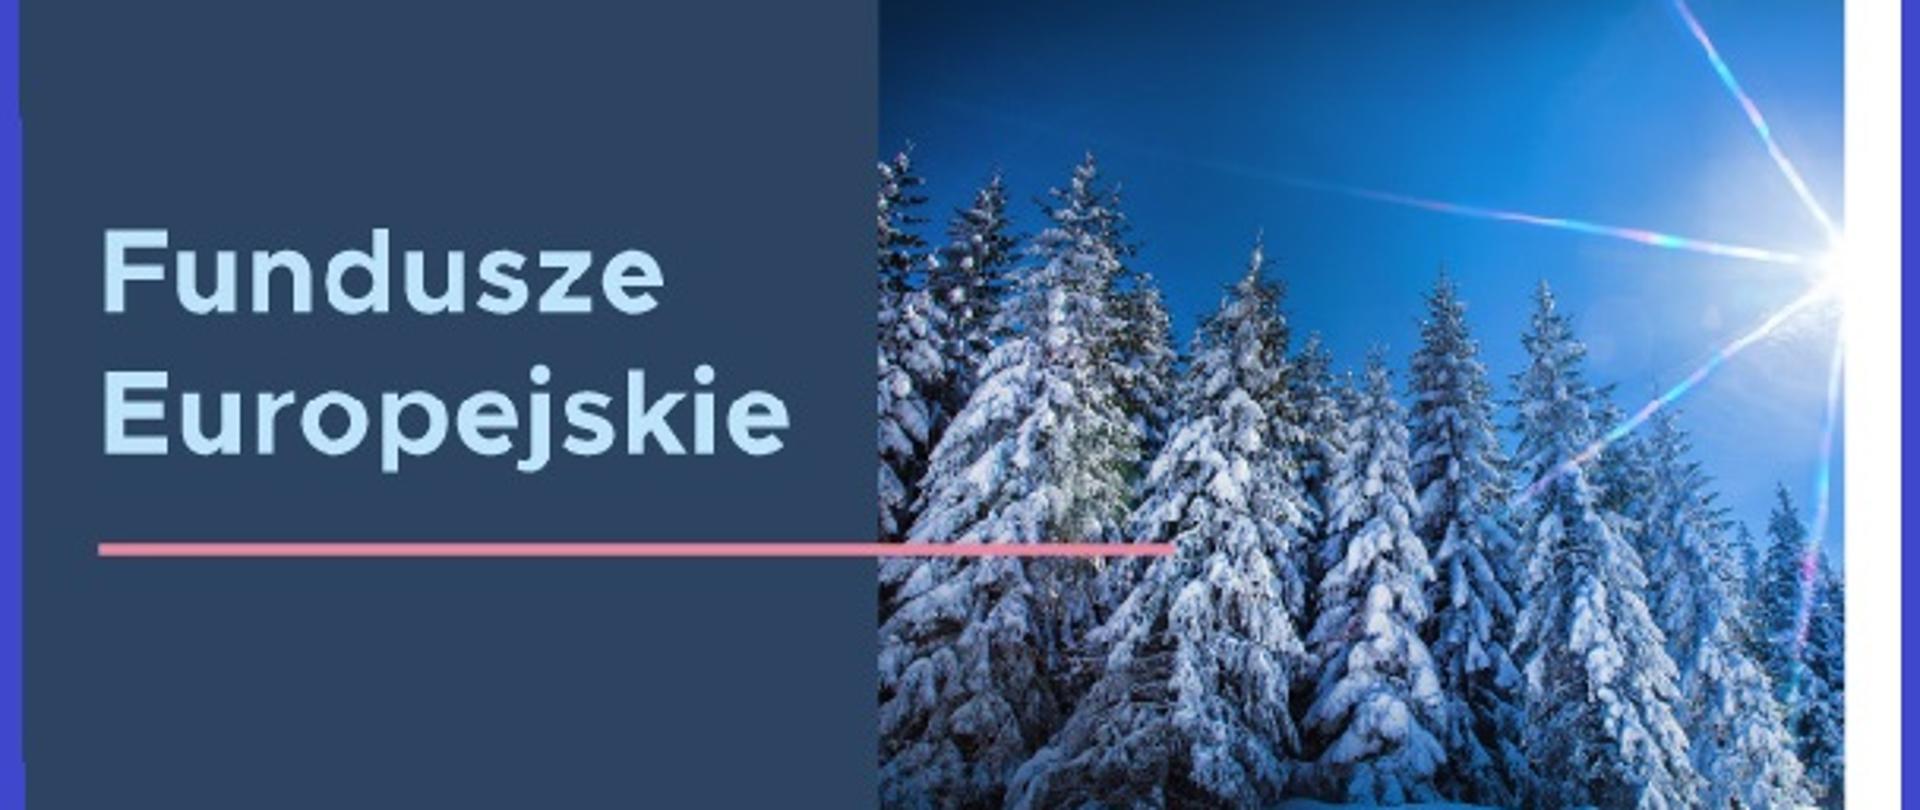 Plakat informacyjny Funduszy Europejskich zdjęcie zimowego krajobrazu choinek